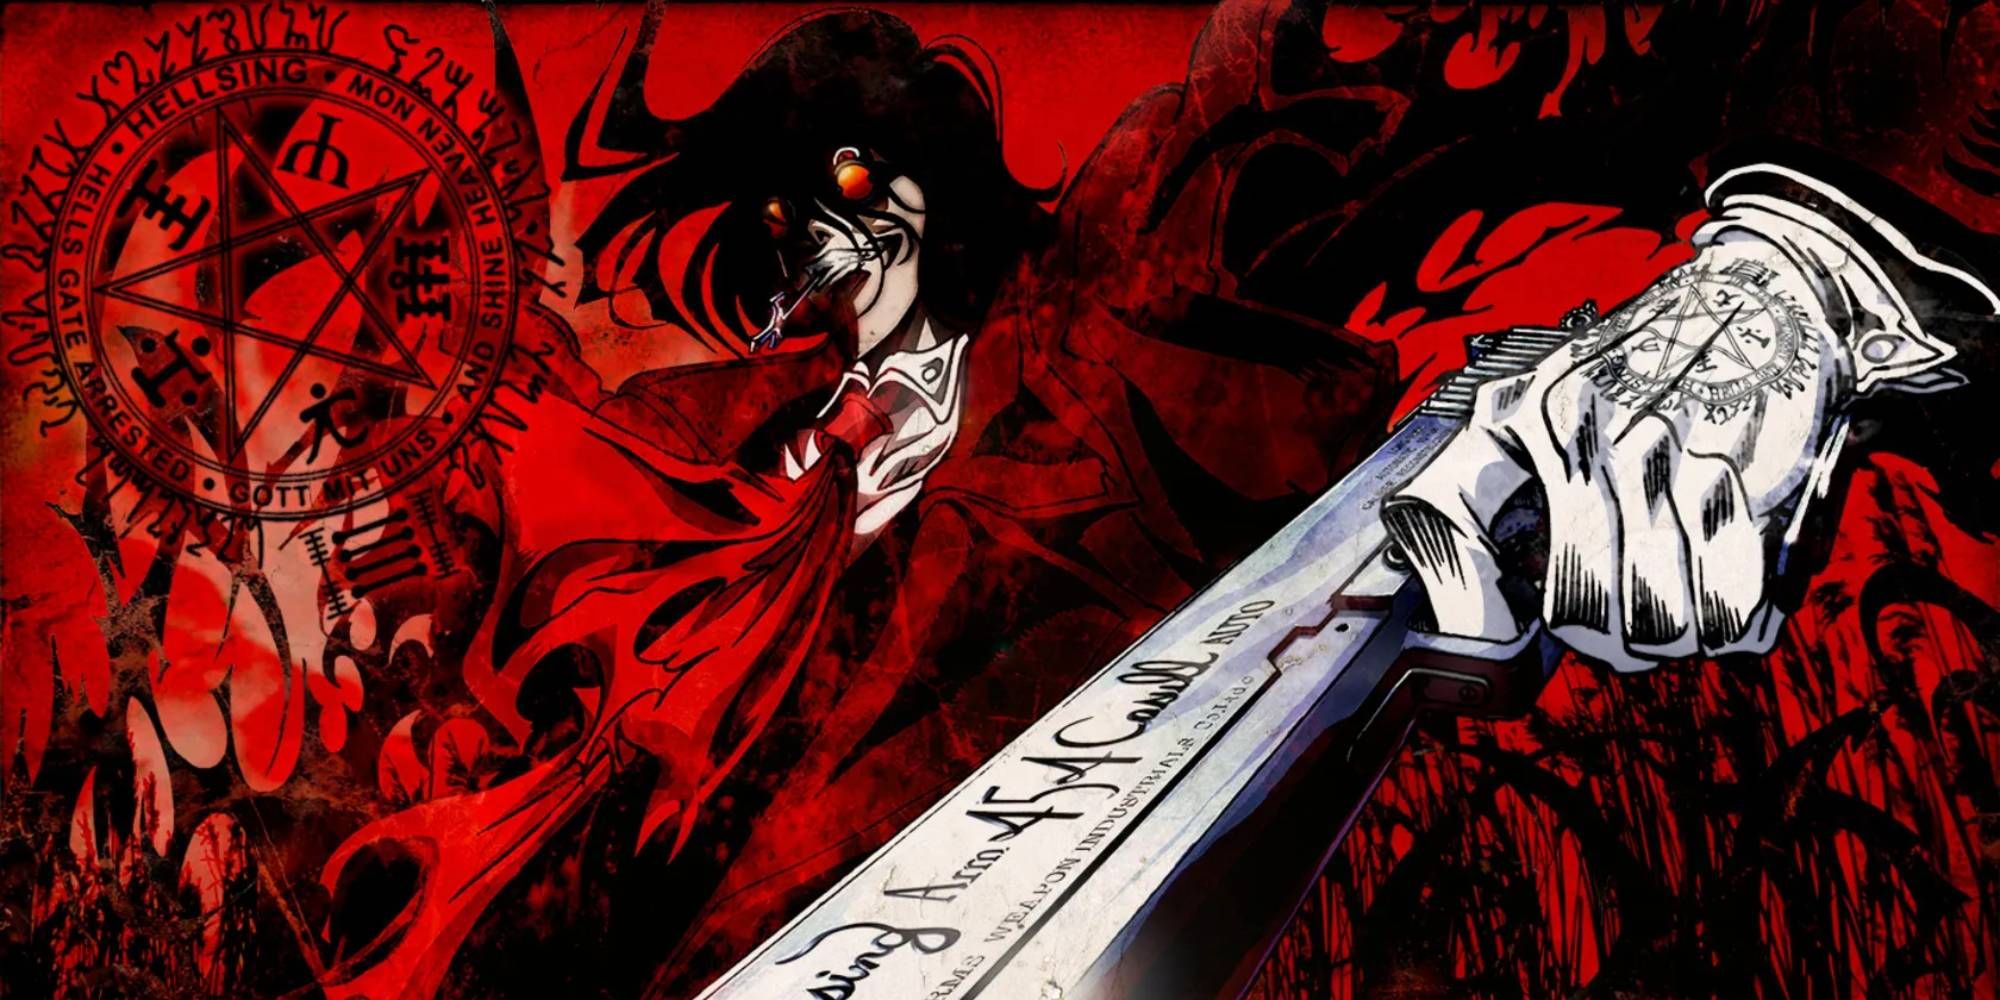 Alucard vampire in Hellsing artwork